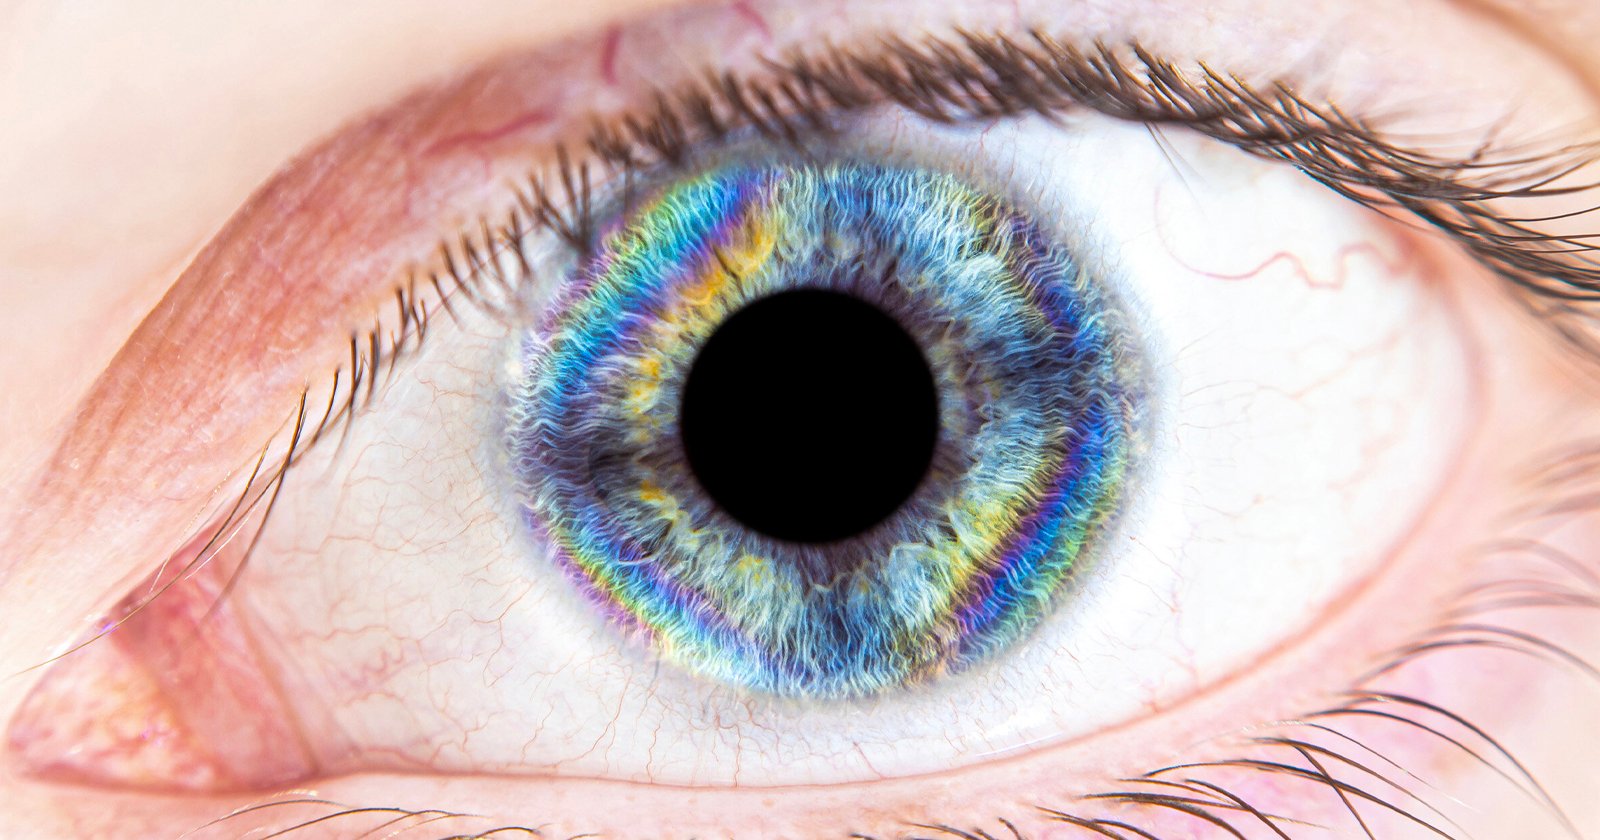 Photographing Rainbow Eyes By Using Birefringence